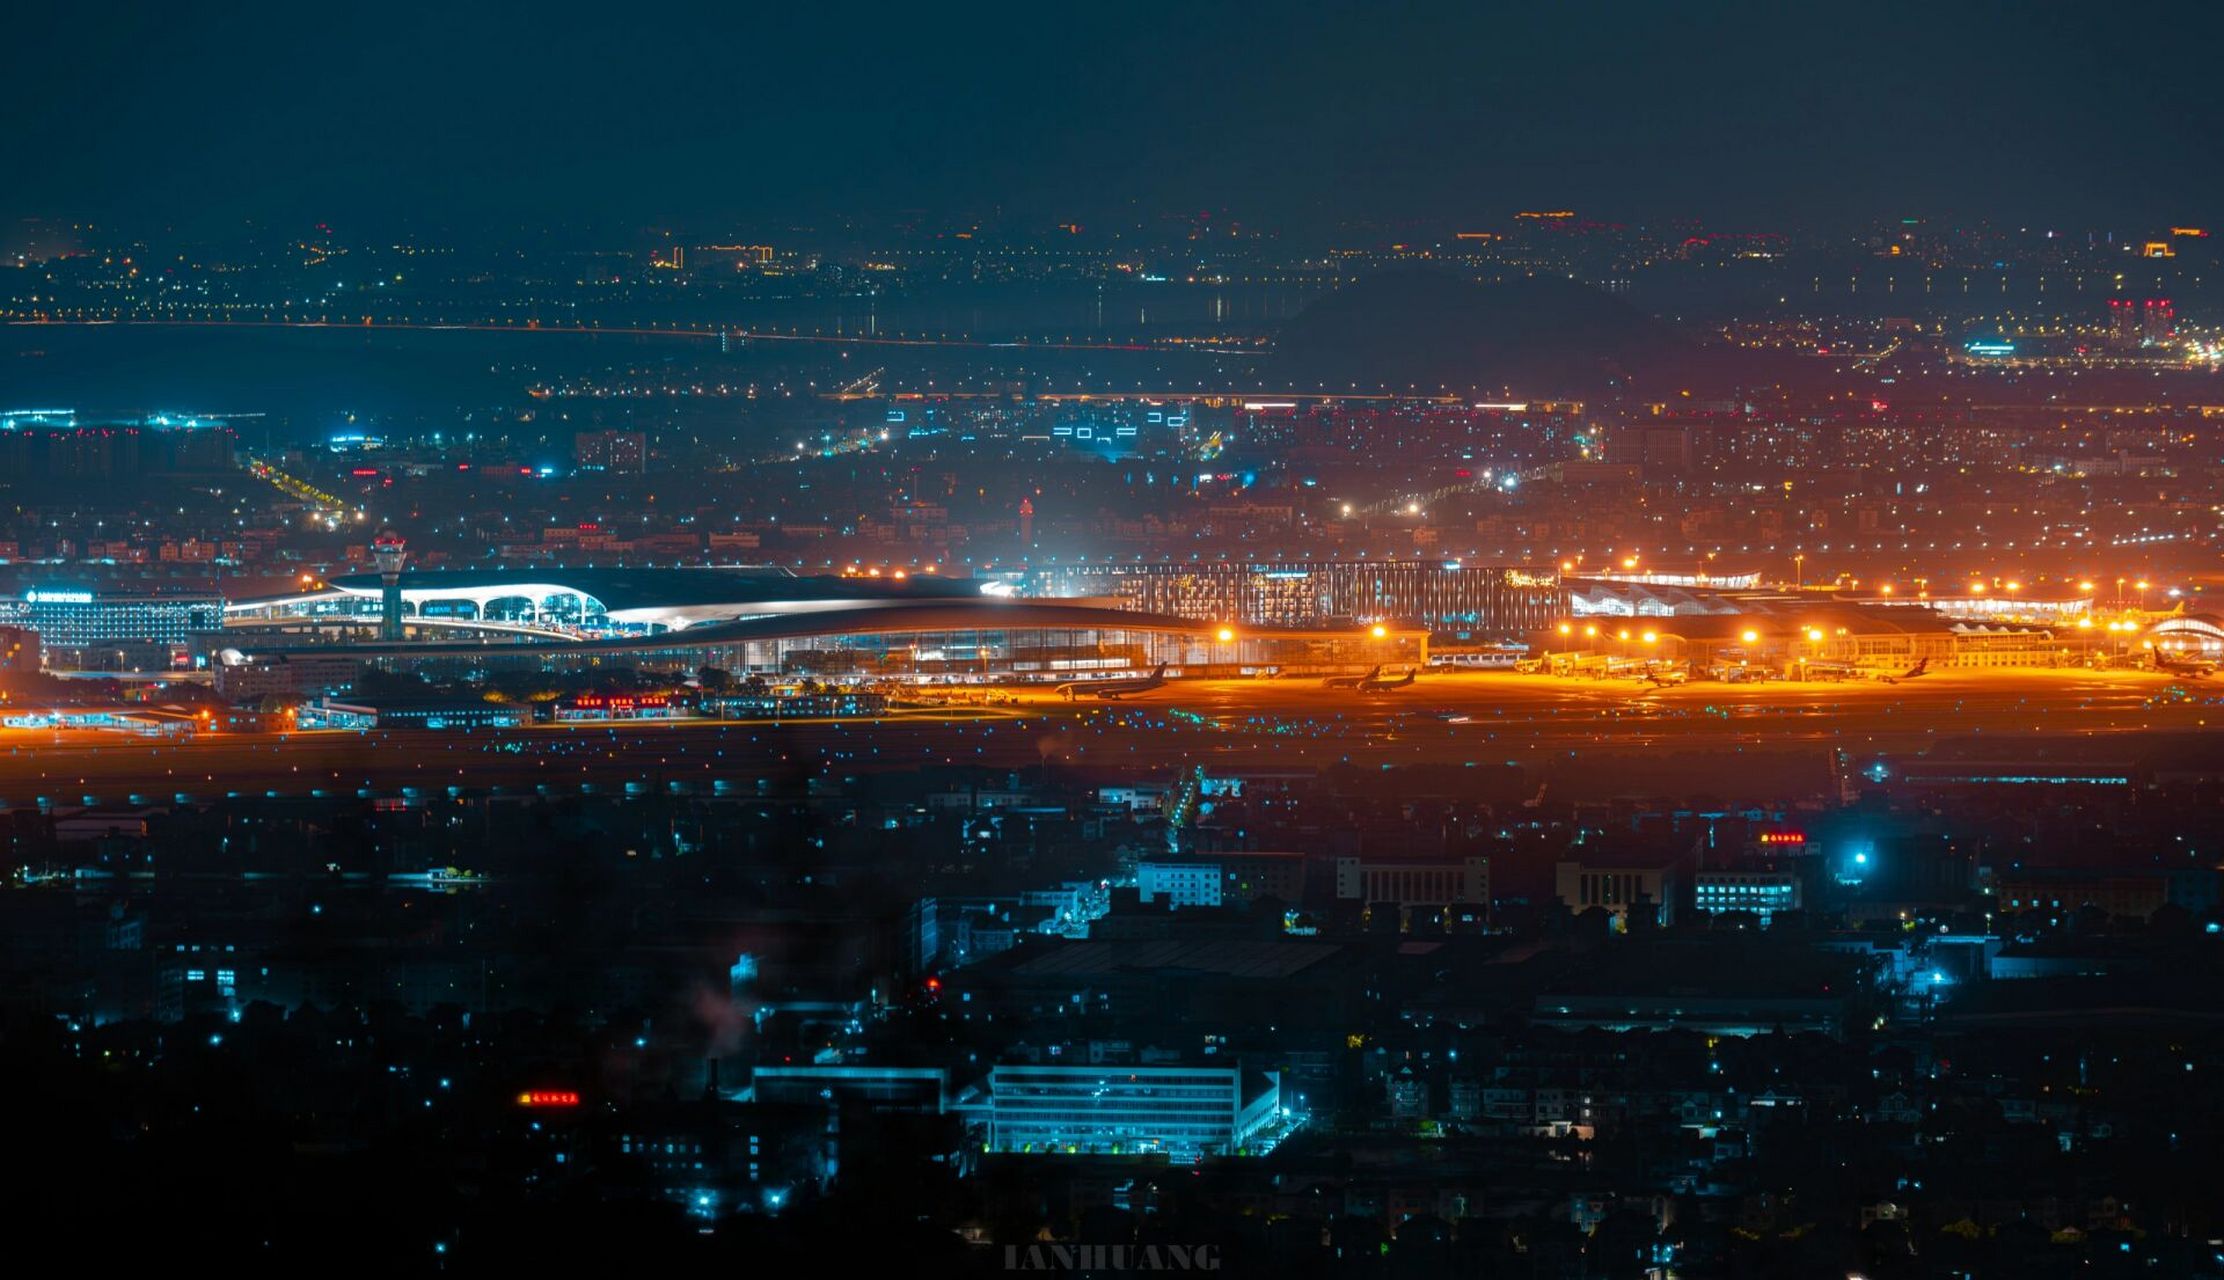 包头机场夜景图片